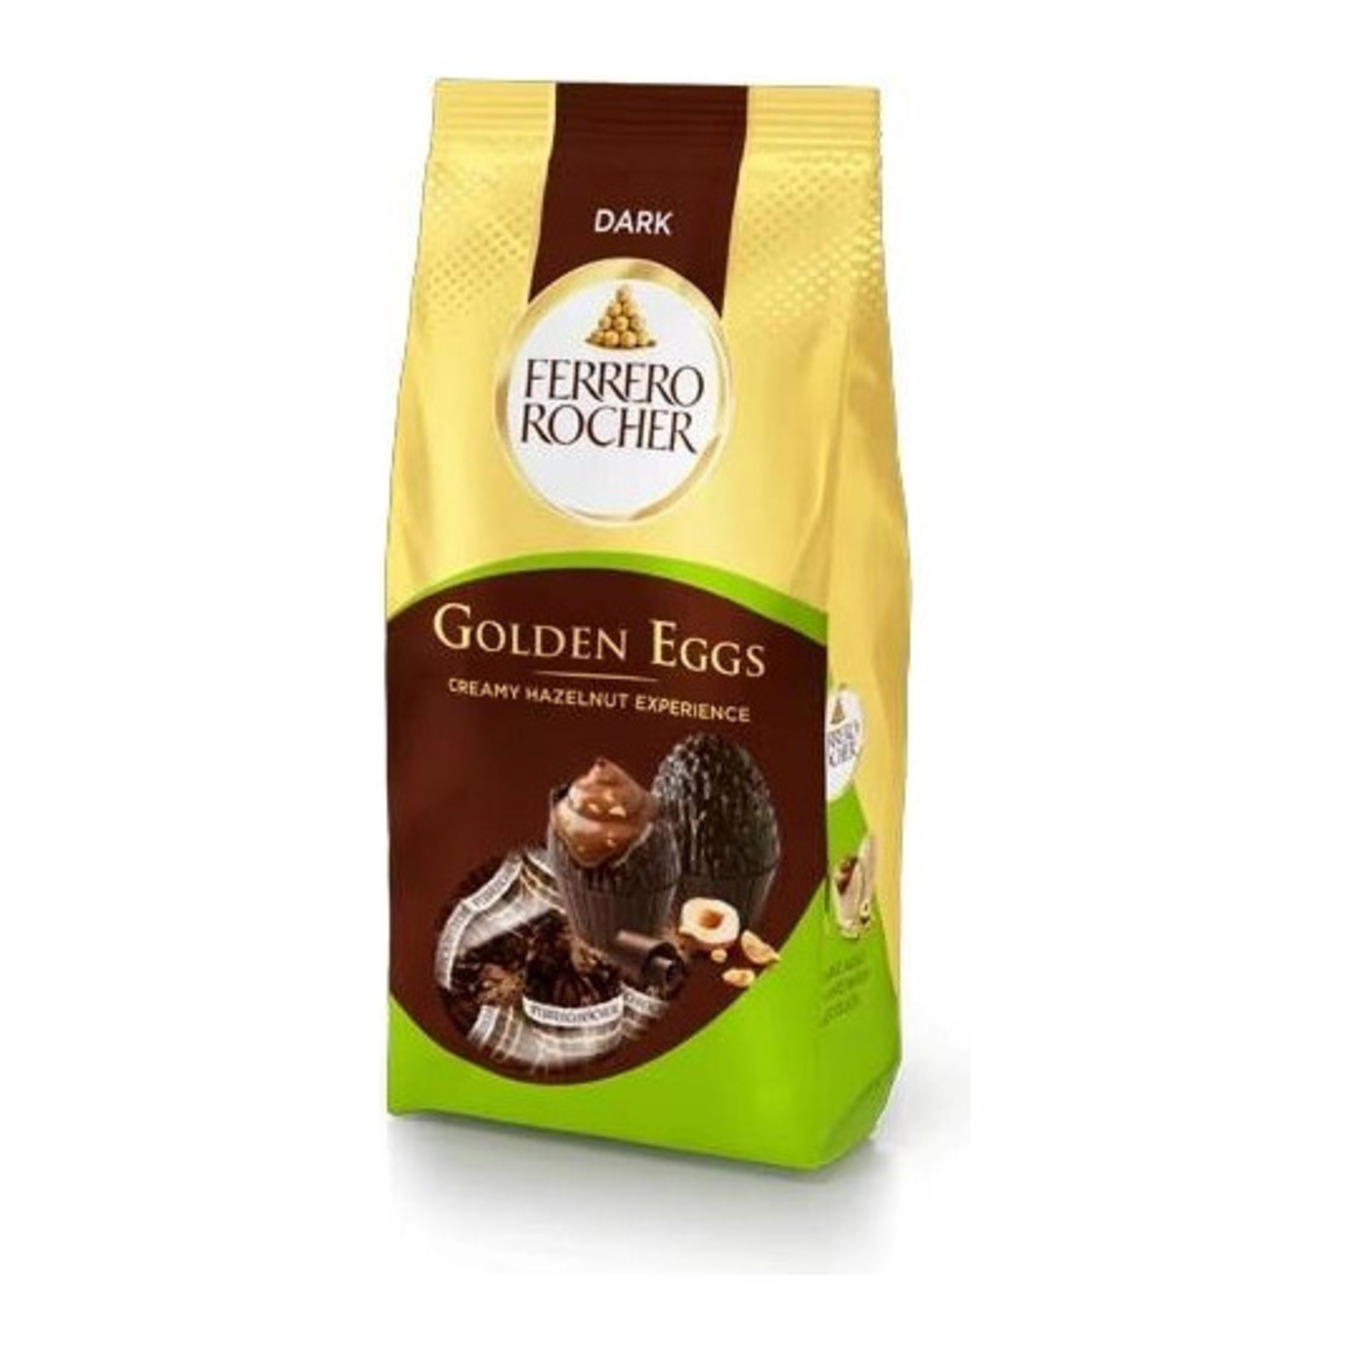 A set of GOLDEN EGGS DARK Ferrero Rocher dark chocolate candies 90g